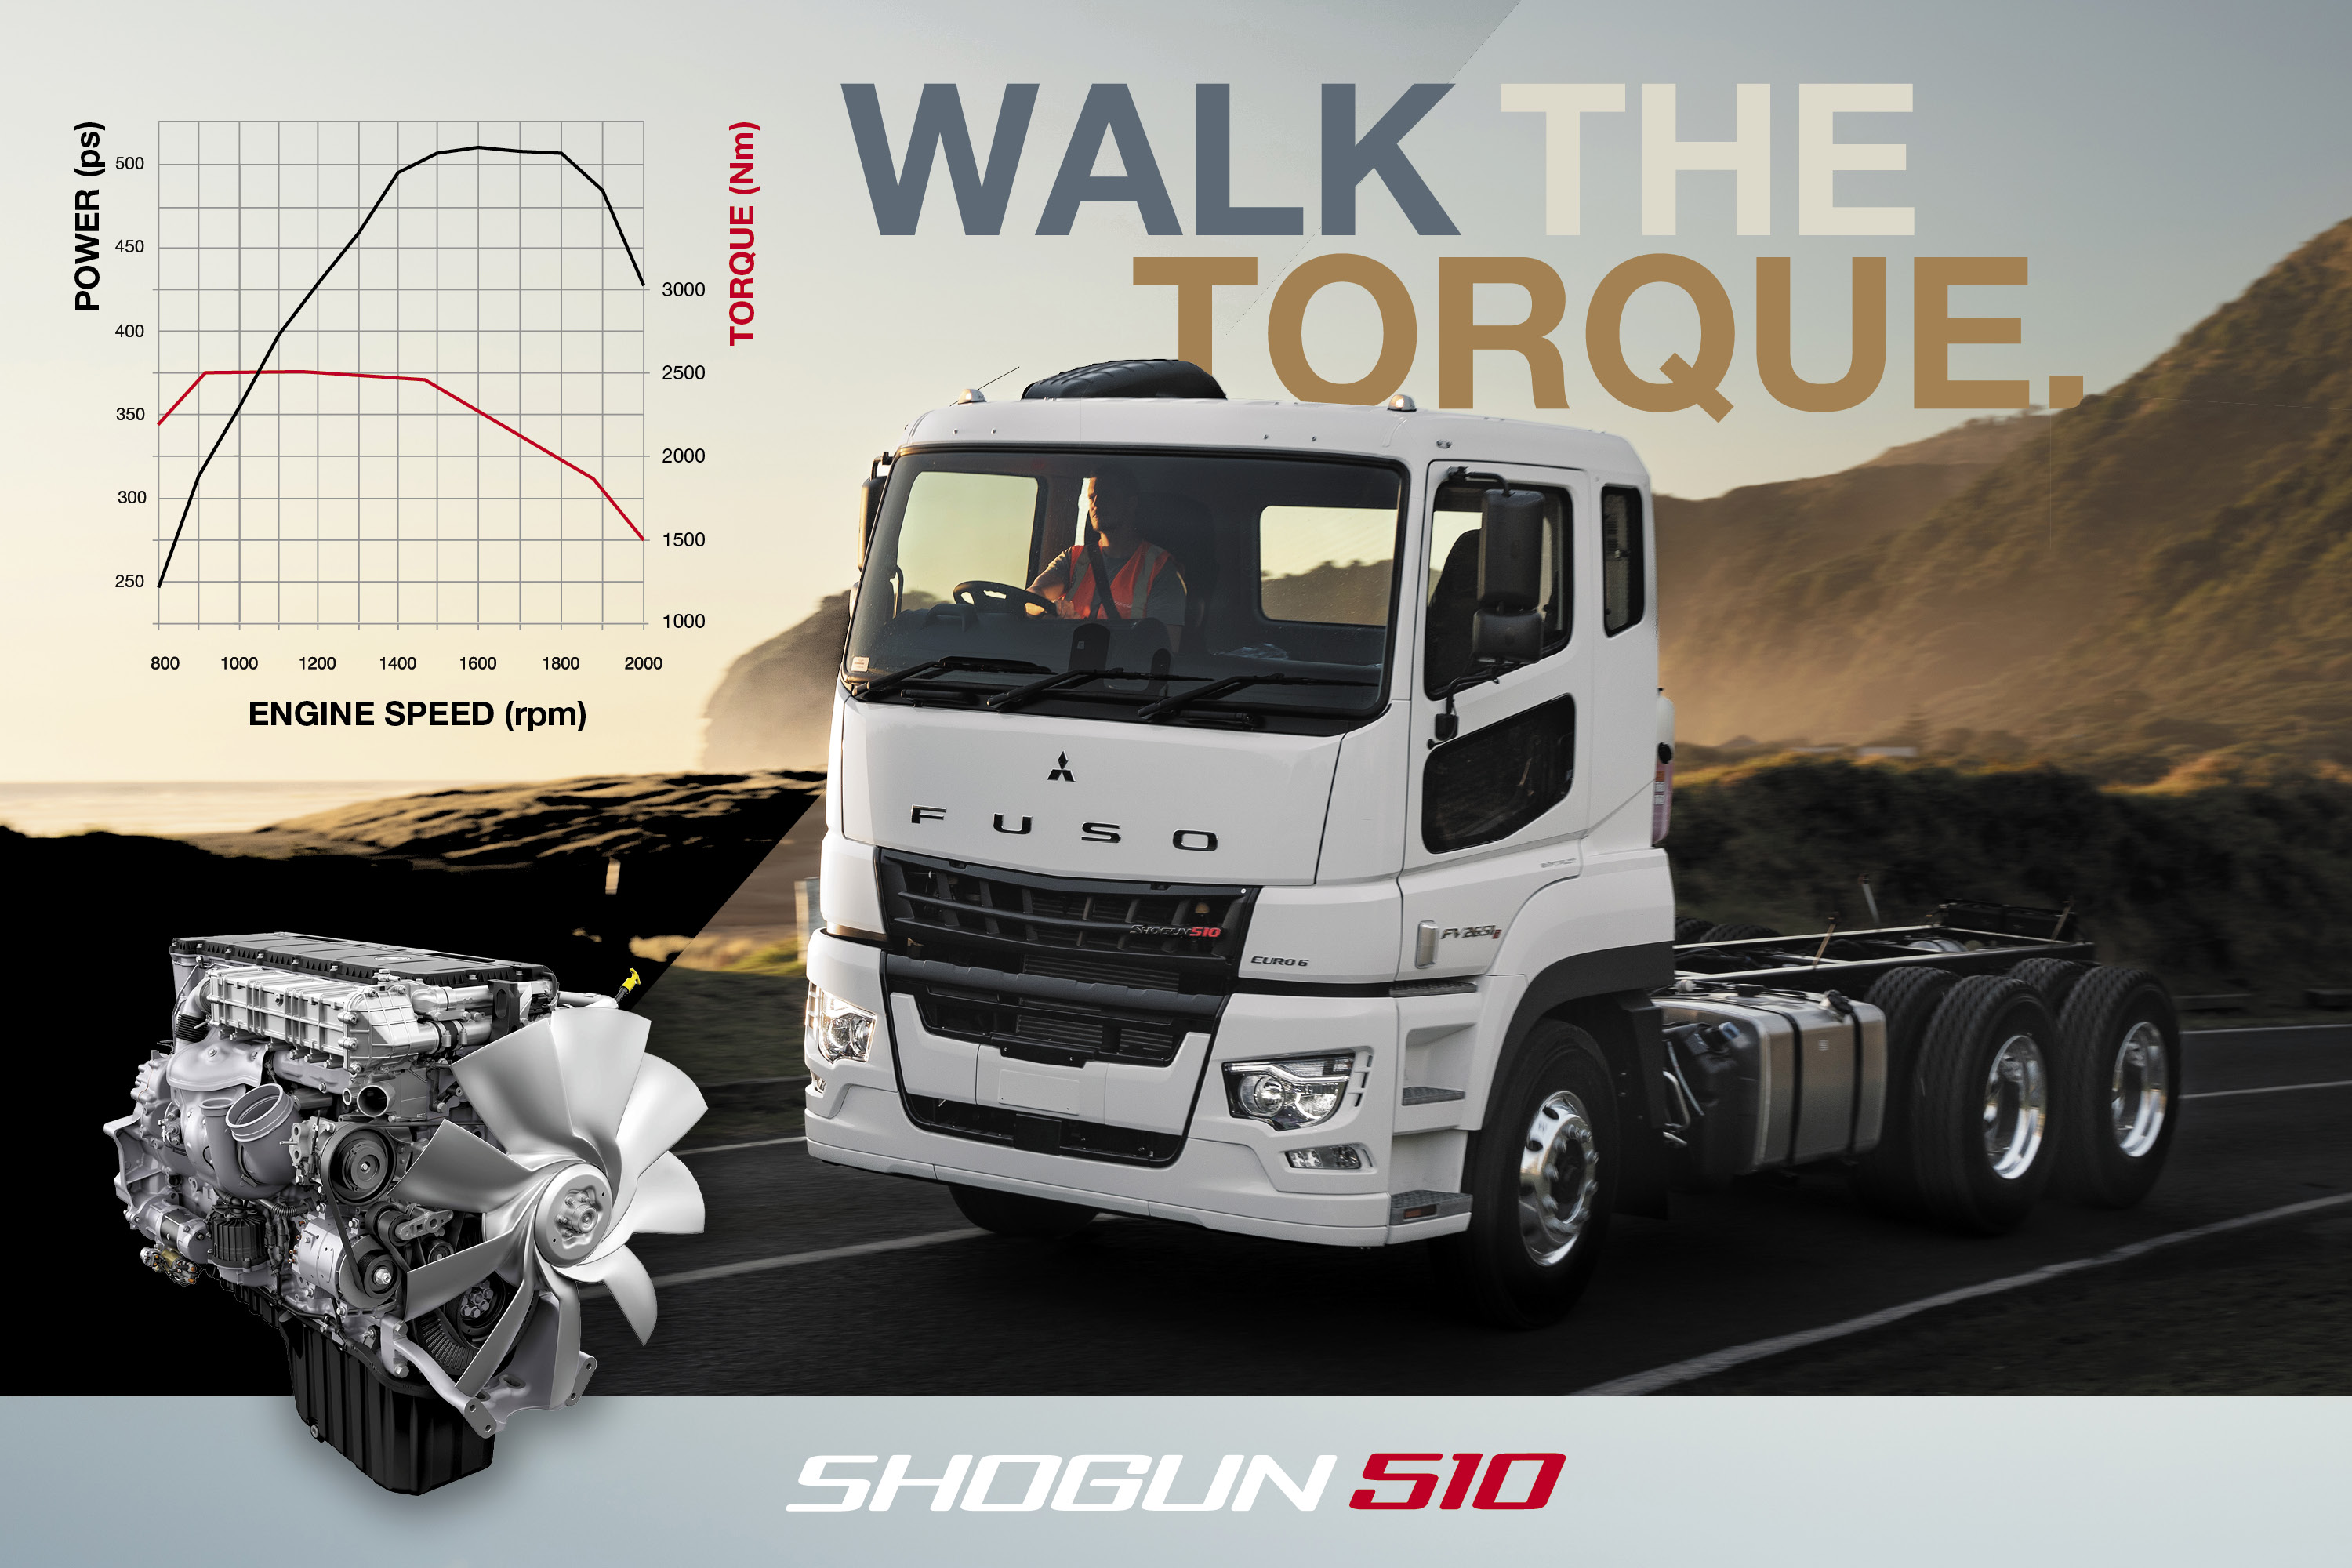 Walk the torque. Shogun 510